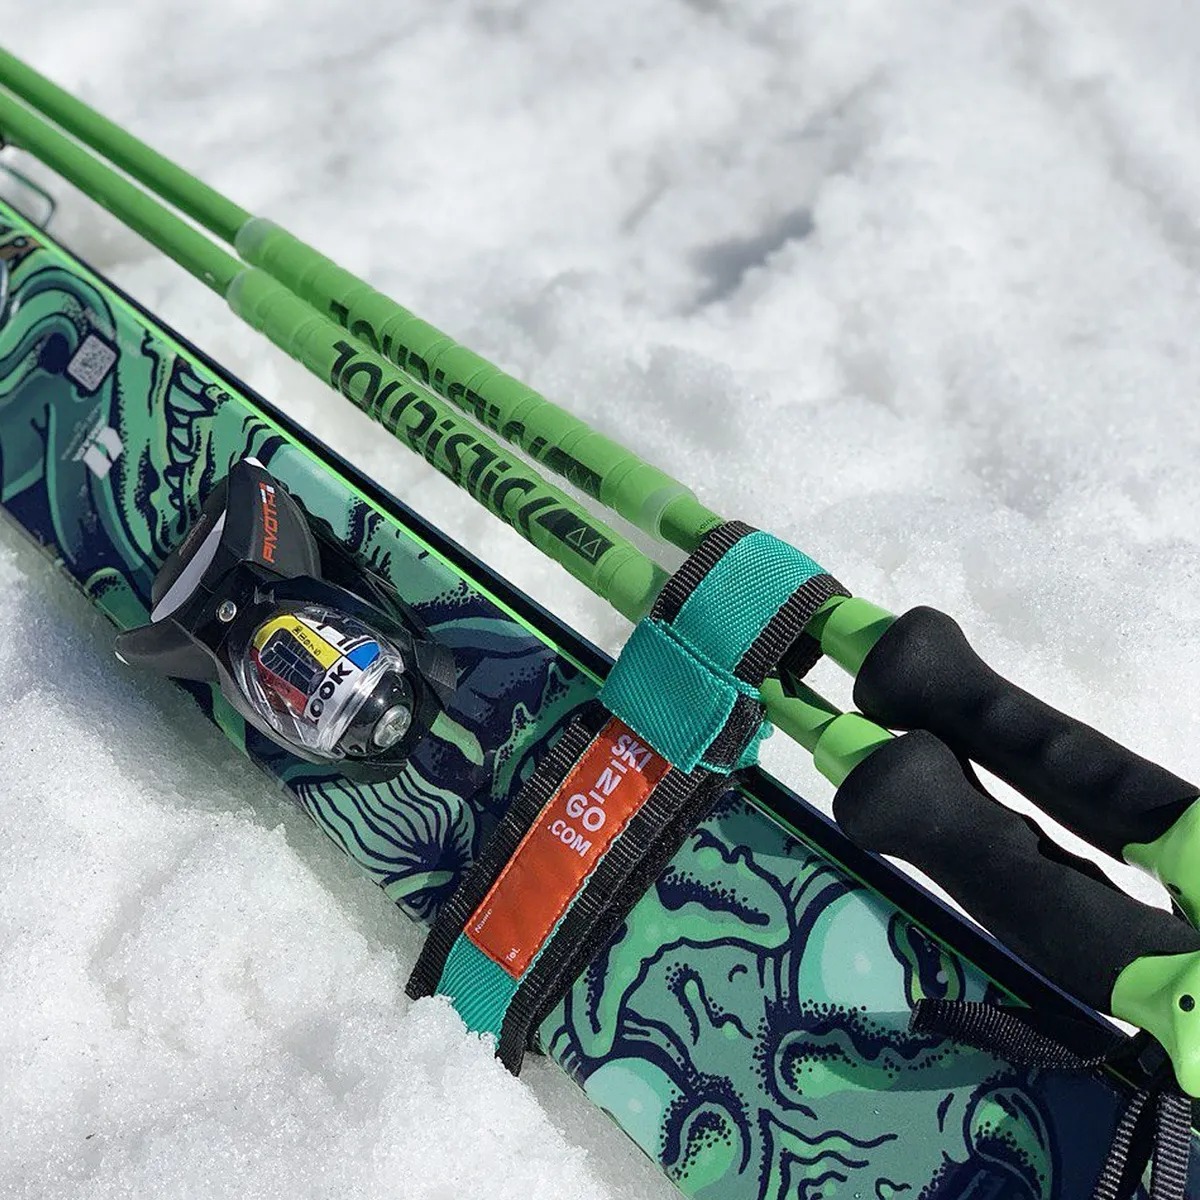 Ski n. Ski n go переноска. Приспособление для переноски лыж и лыжных палок Ski-n-go Yellow 643vz-tl17_Blye. Чехол для переноски лыж. Соединитель для лыжных палок.